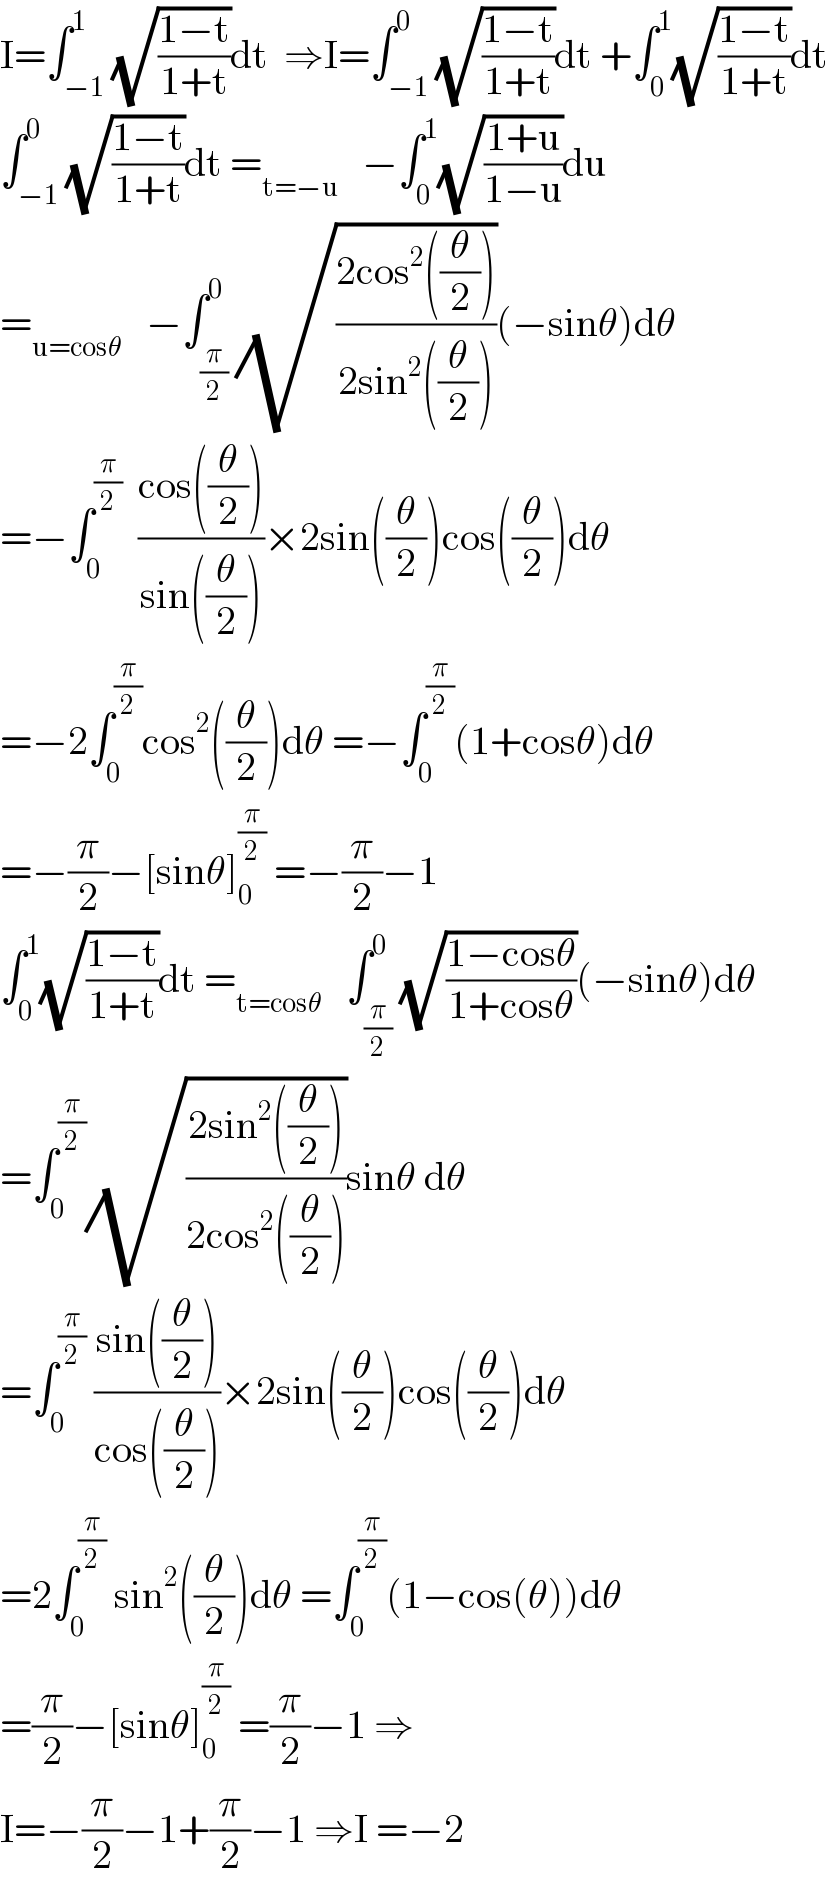 I=∫_(−1) ^1 (√((1−t)/(1+t)))dt  ⇒I=∫_(−1) ^0 (√((1−t)/(1+t)))dt +∫_0 ^1 (√((1−t)/(1+t)))dt  ∫_(−1) ^0 (√((1−t)/(1+t)))dt =_(t=−u)    −∫_0 ^1 (√((1+u)/(1−u)))du  =_(u=cosθ)    −∫_(π/2) ^0 (√((2cos^2 ((θ/2)))/(2sin^2 ((θ/2)))))(−sinθ)dθ  =−∫_0 ^(π/2)   ((cos((θ/2)))/(sin((θ/2))))×2sin((θ/2))cos((θ/2))dθ  =−2∫_0 ^(π/2) cos^2 ((θ/2))dθ =−∫_0 ^(π/2) (1+cosθ)dθ  =−(π/2)−[sinθ]_0 ^(π/2)  =−(π/2)−1  ∫_0 ^1 (√((1−t)/(1+t)))dt =_(t=cosθ)    ∫_(π/2) ^0 (√((1−cosθ)/(1+cosθ)))(−sinθ)dθ  =∫_0 ^(π/2) (√((2sin^2 ((θ/2)))/(2cos^2 ((θ/2)))))sinθ dθ  =∫_0 ^(π/2)  ((sin((θ/2)))/(cos((θ/2))))×2sin((θ/2))cos((θ/2))dθ  =2∫_0 ^(π/2)  sin^2 ((θ/2))dθ =∫_0 ^(π/2) (1−cos(θ))dθ  =(π/2)−[sinθ]_0 ^(π/2)  =(π/2)−1 ⇒  I=−(π/2)−1+(π/2)−1 ⇒I =−2  